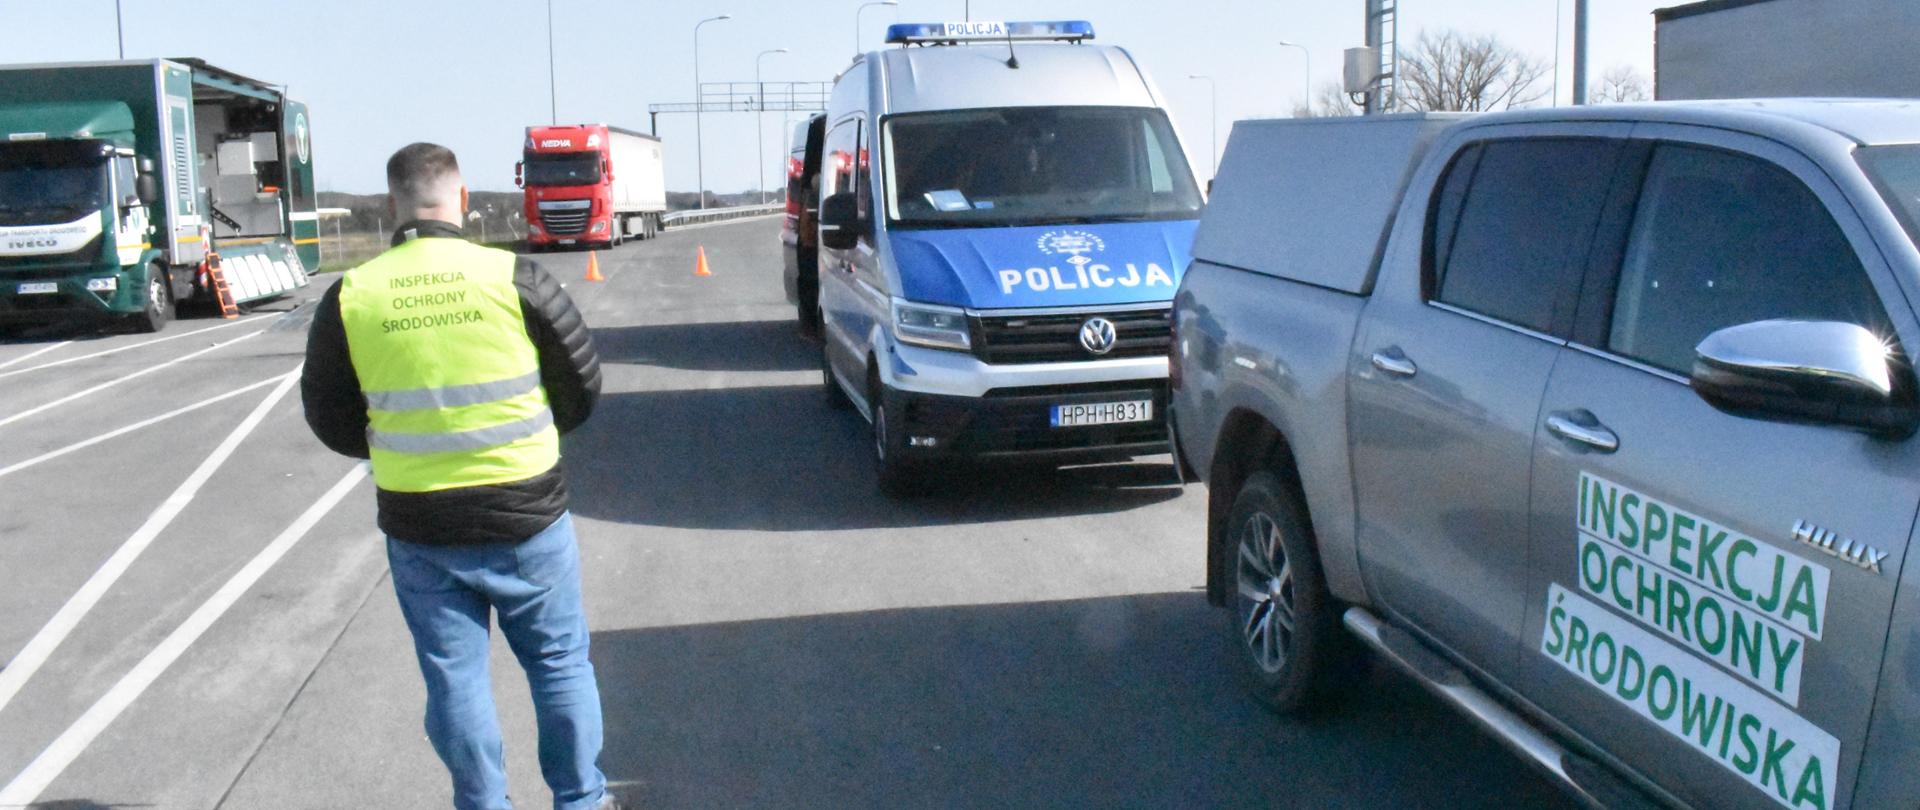 Inspektor Wojewódzkiego Inspektoratu Ochrony Środowiska w Warszawie prowadzi działania w punkcie kontrolnym na drodze. Po jego prawej stronie stoi samochód osobowy należący do Inspekcji Ochrony środowiska oraz furgonetka należąca do Policji. W tle widać dwa samochody ciężarowe.